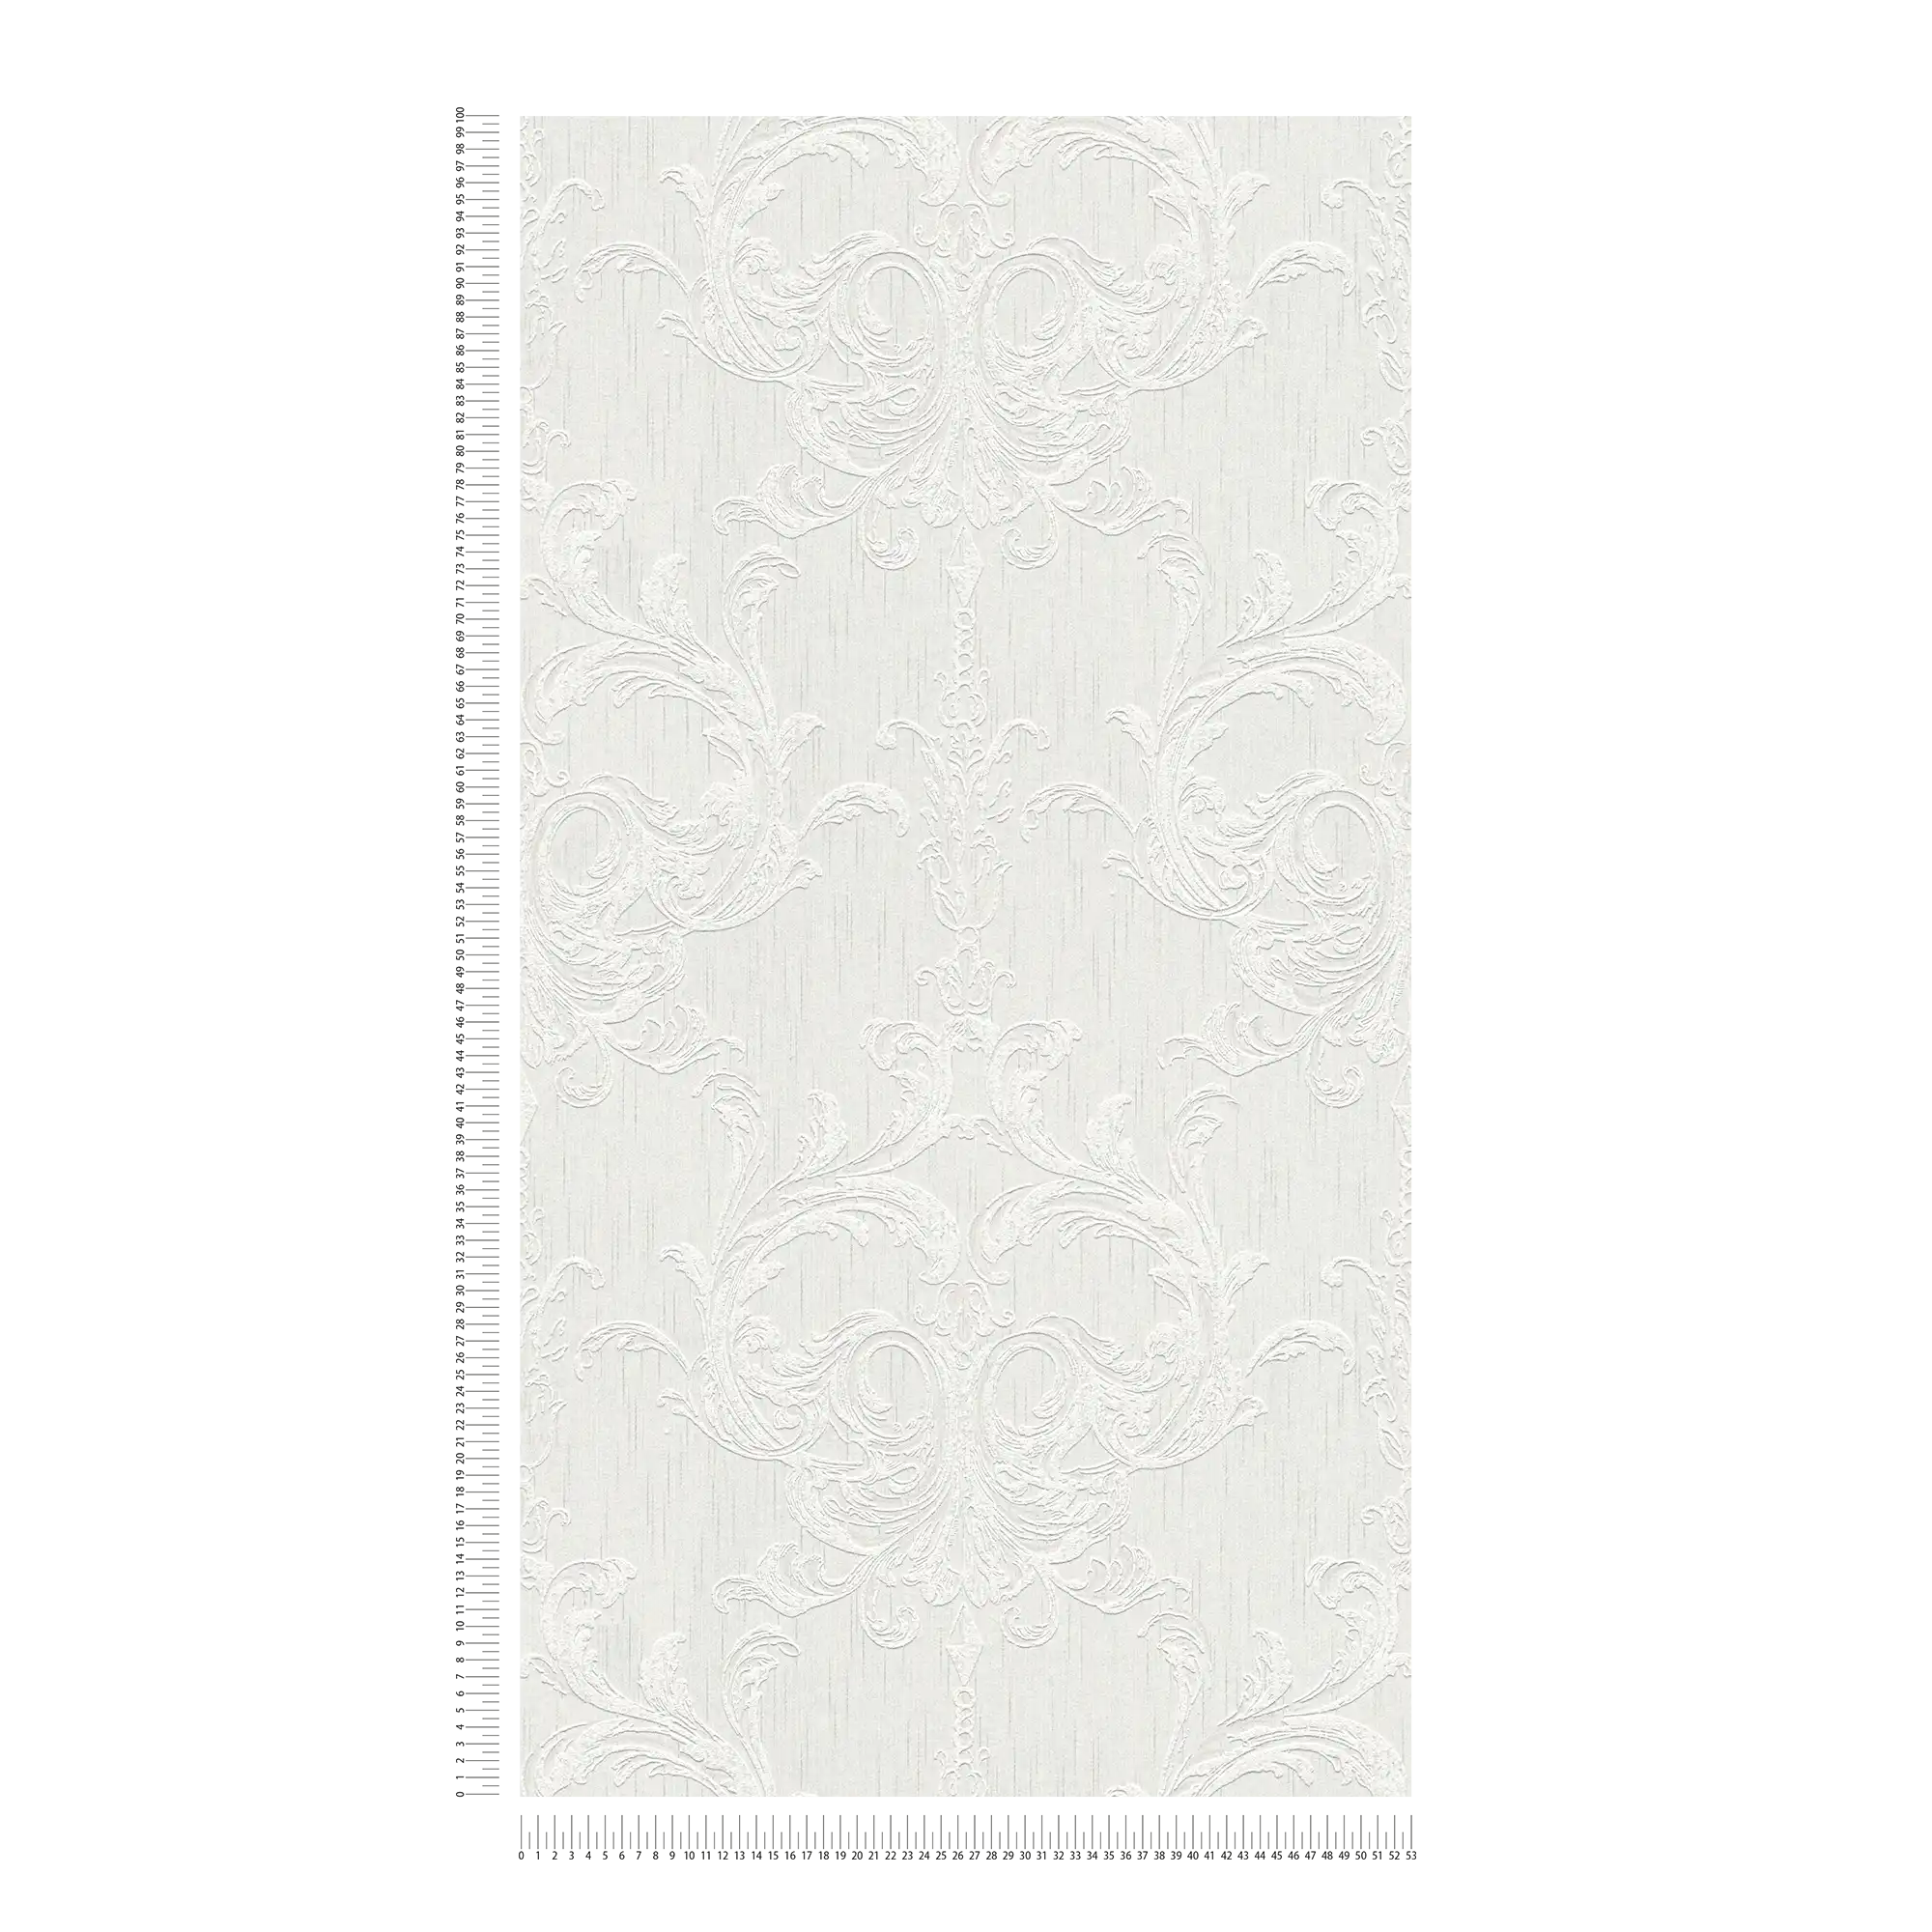             Papel pintado ornamental con diseño de estuco y aspecto de yeso - gris, blanco
        